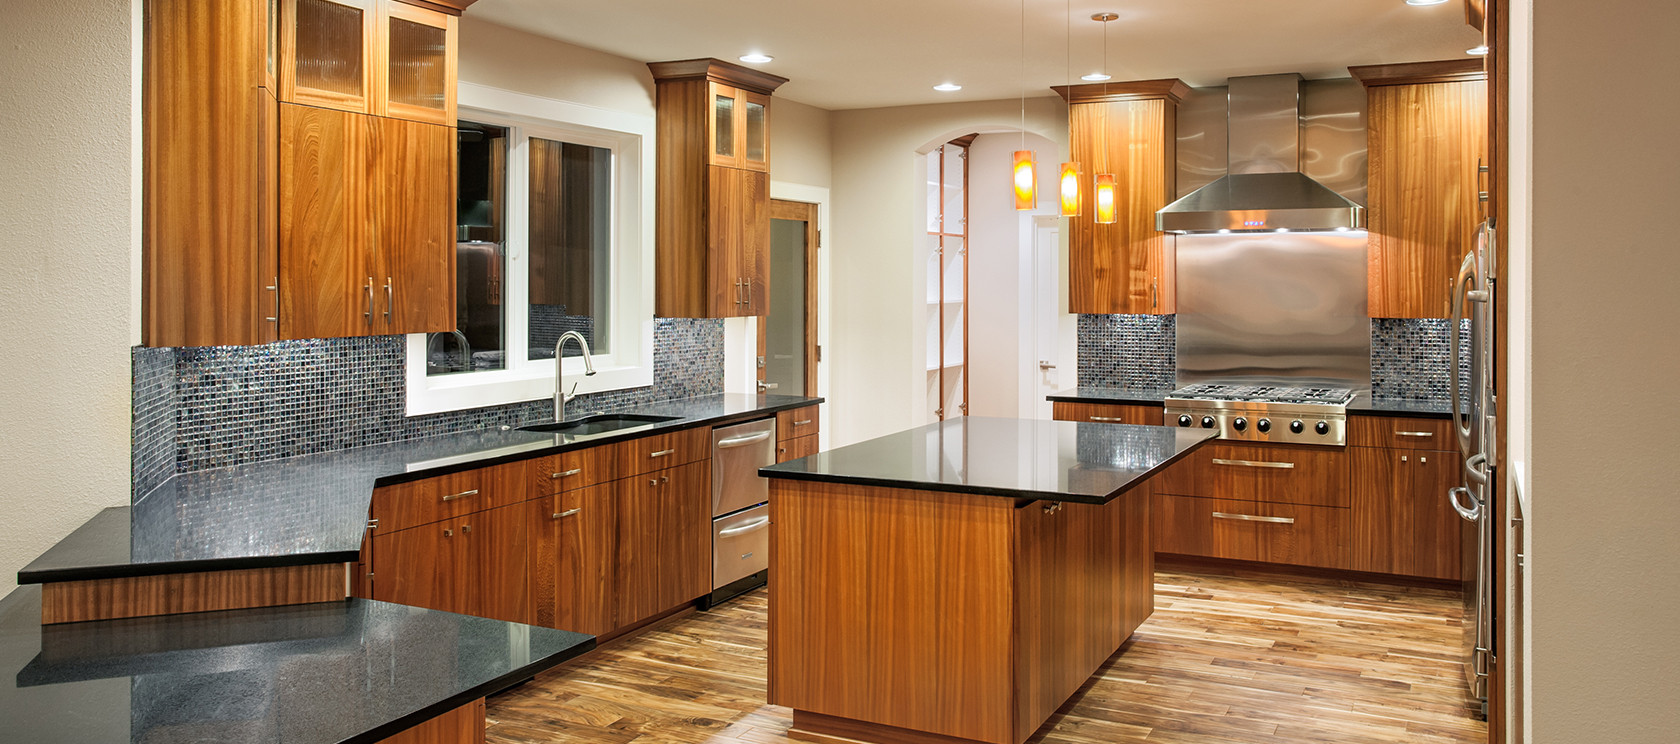 Kitchen Countertops Pictures
 Granite & Quartz Kitchen Countertops